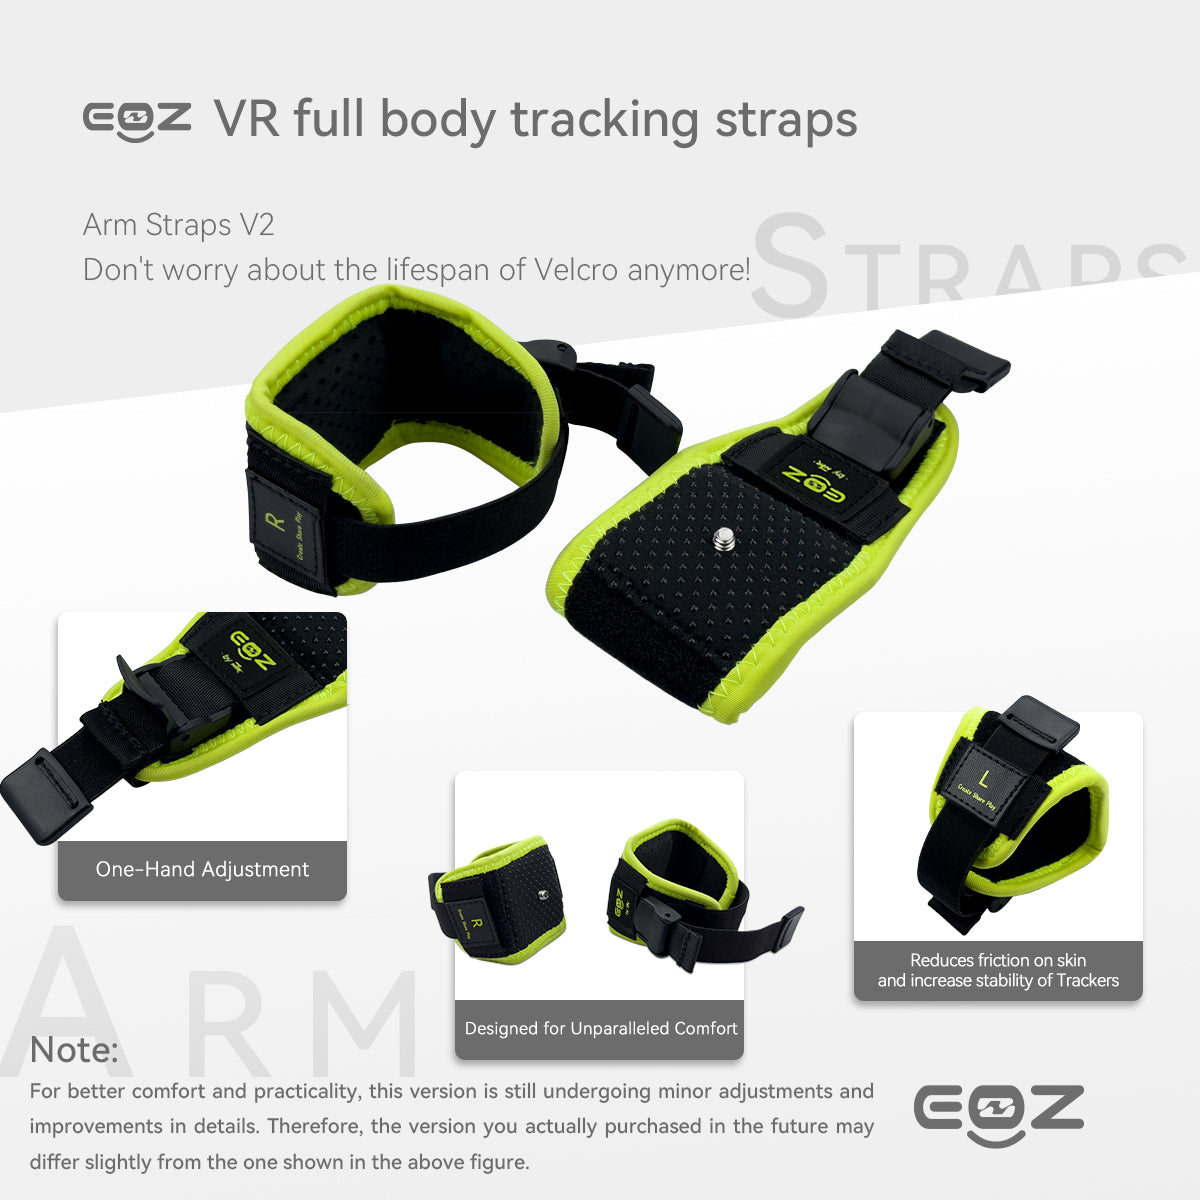  KIWI design Tracker Straps and Belt for Full Body